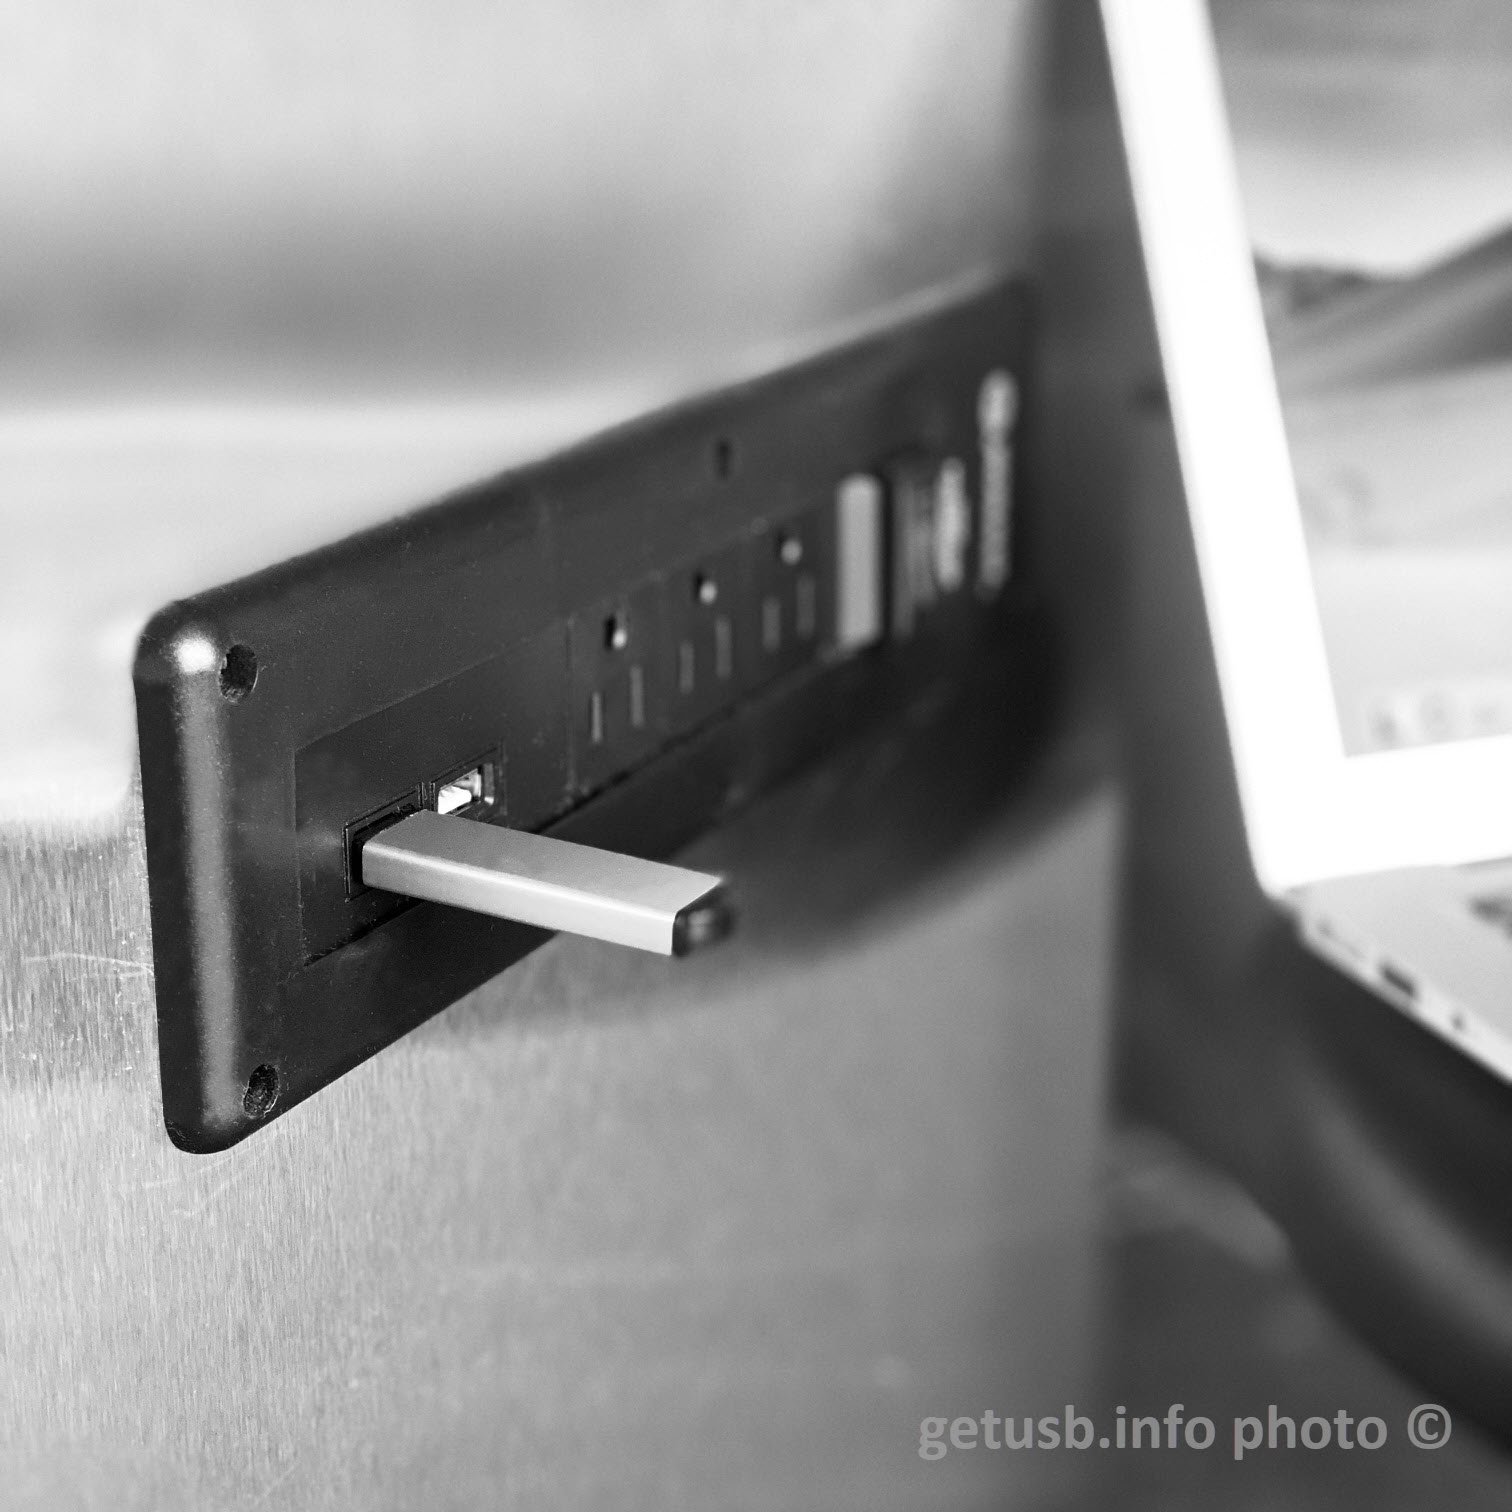 Unidad flash USB del sistema de control industrial diseñada para la seguridad ICS